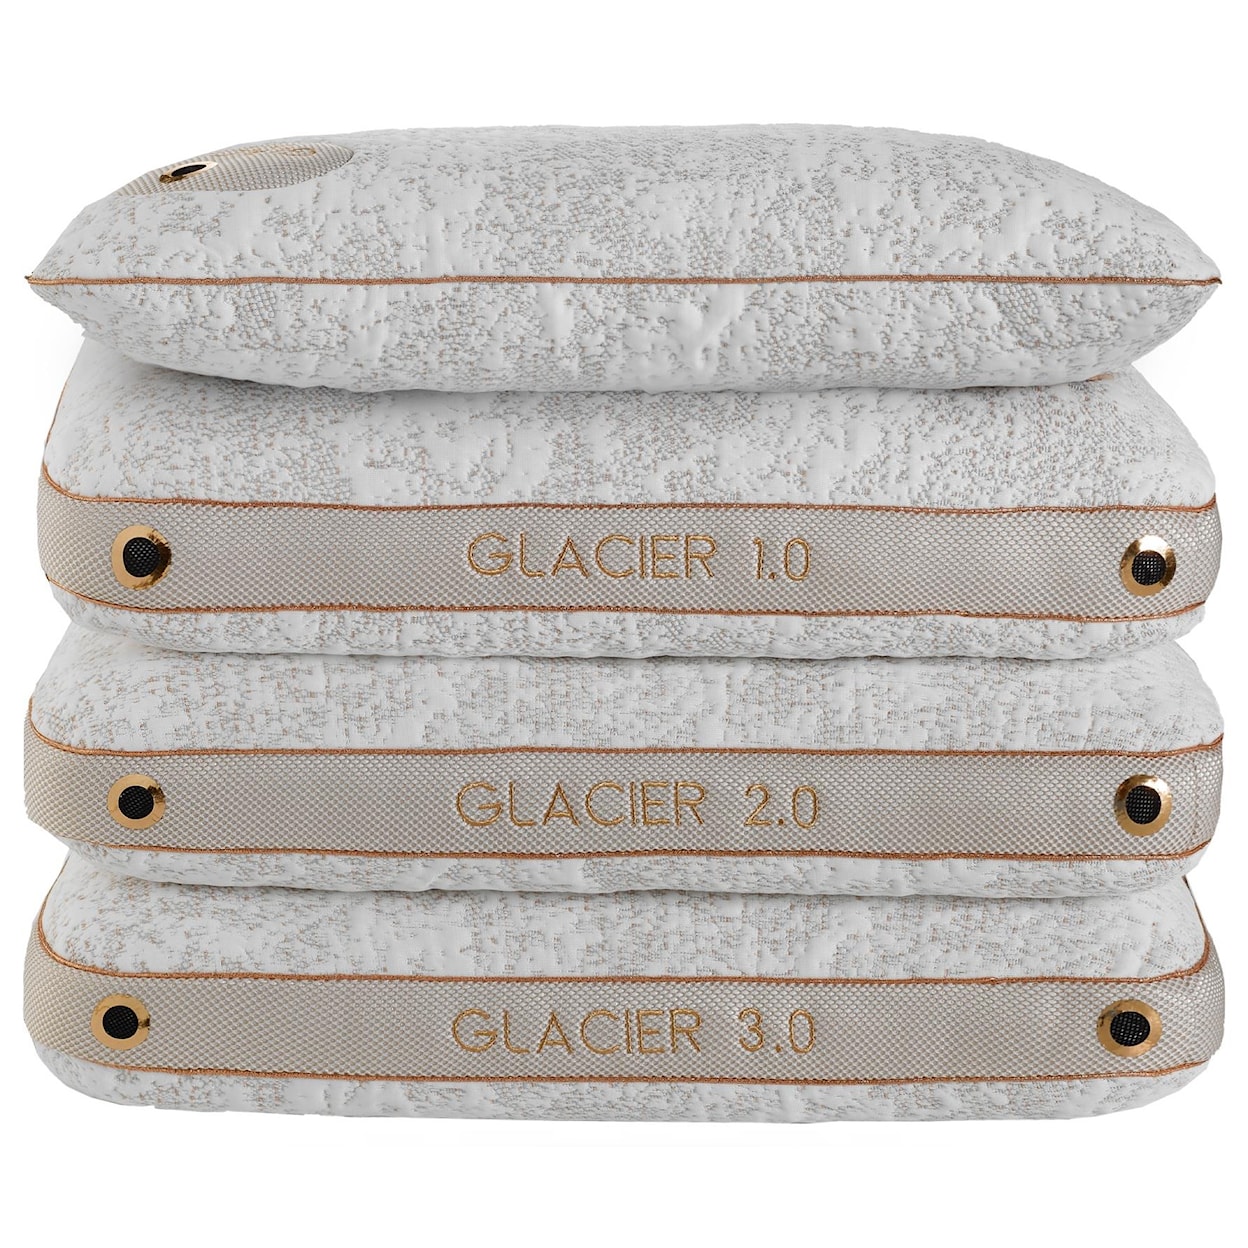 Bedgear Glacier 2.0 Pillow 